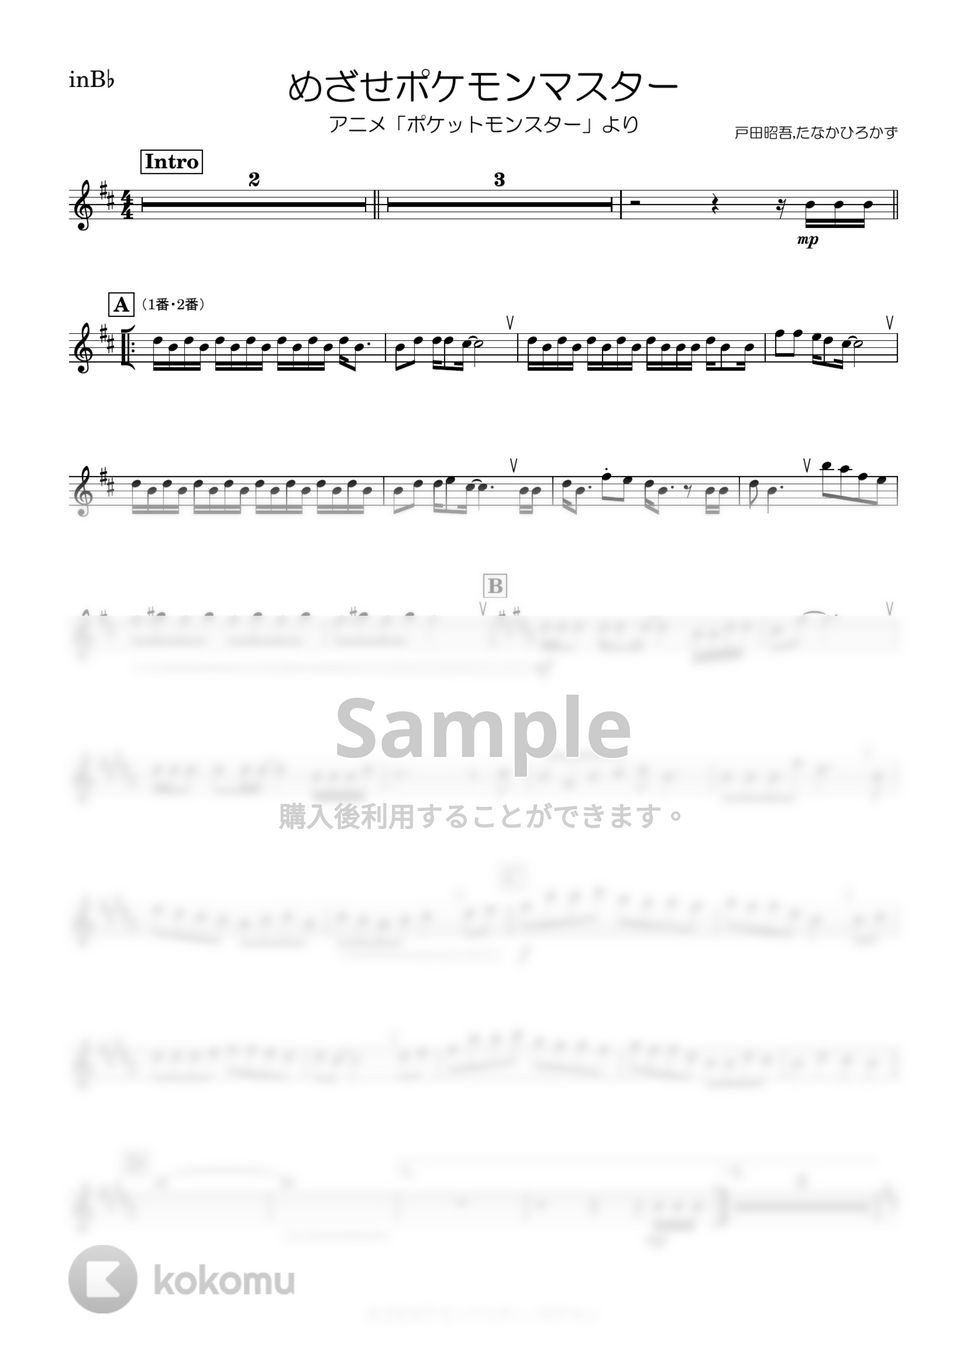 ポケモン - めざせポケモンマスター (B♭) by kanamusic